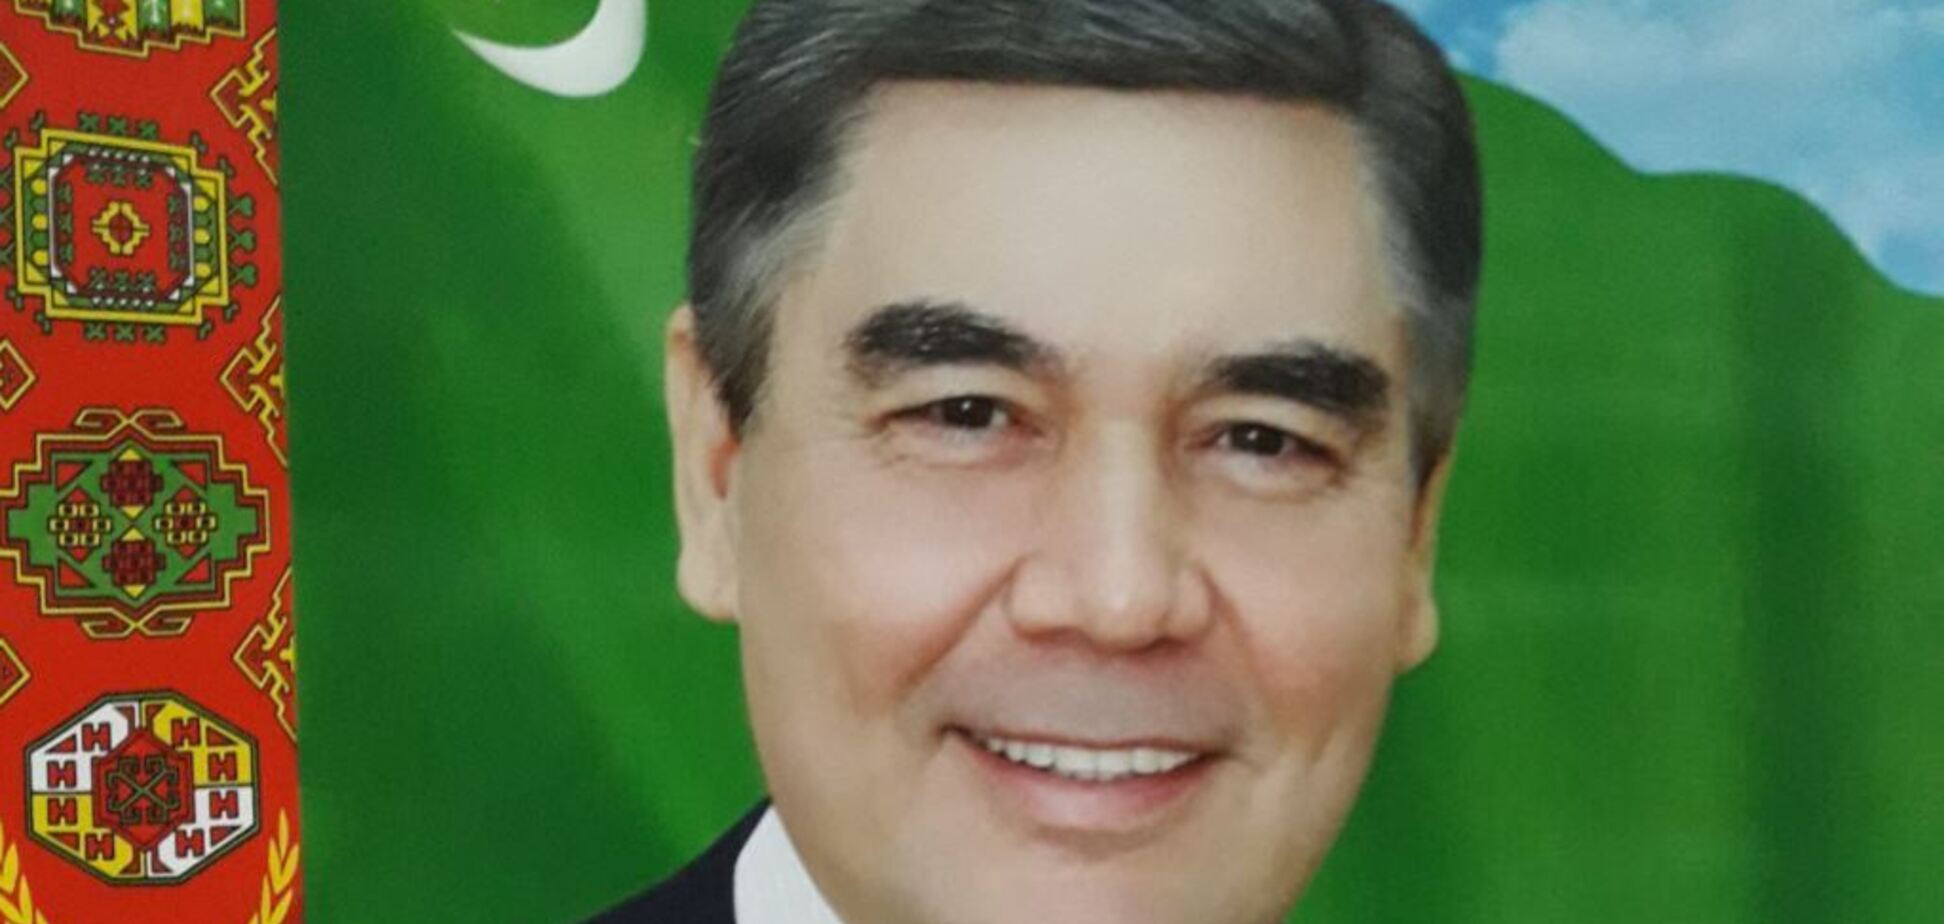 Як президент: туркменських посадовців старше 40 років зобов'язали стати сивими - ЗМІ